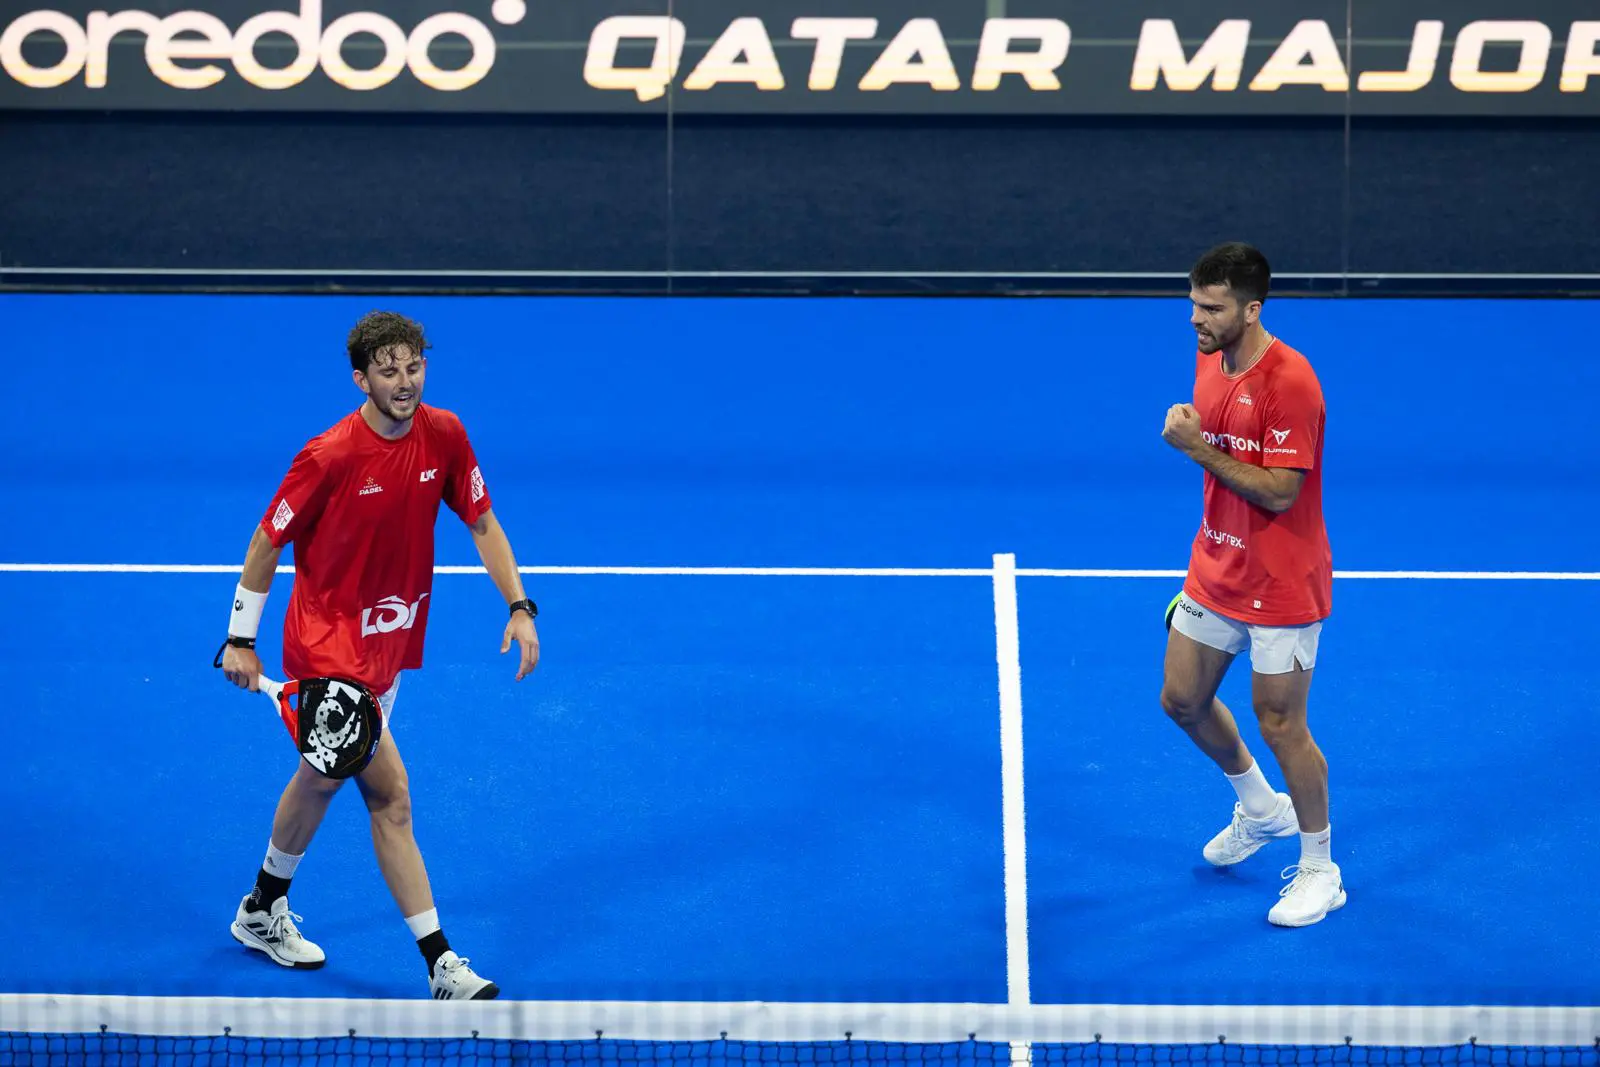 Qatar Major – Mike Yanguas e Javi Garrido schiacciano i campioni in carica e raggiungono la finale